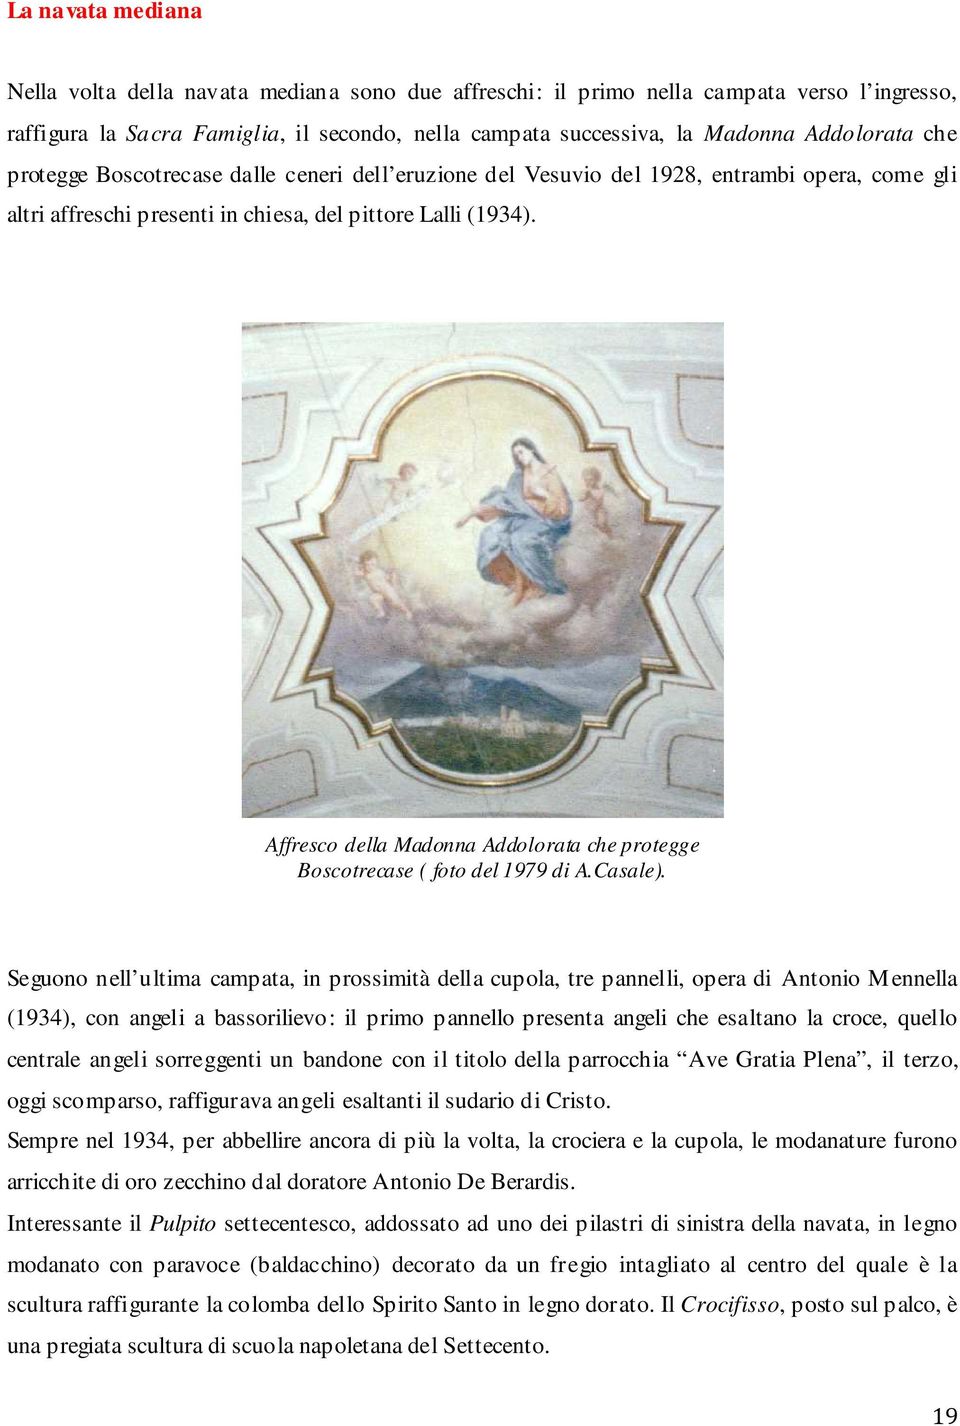 Affresco della Madonna Addolorata che protegge Boscotrecase ( foto del 1979 di A.Casale).